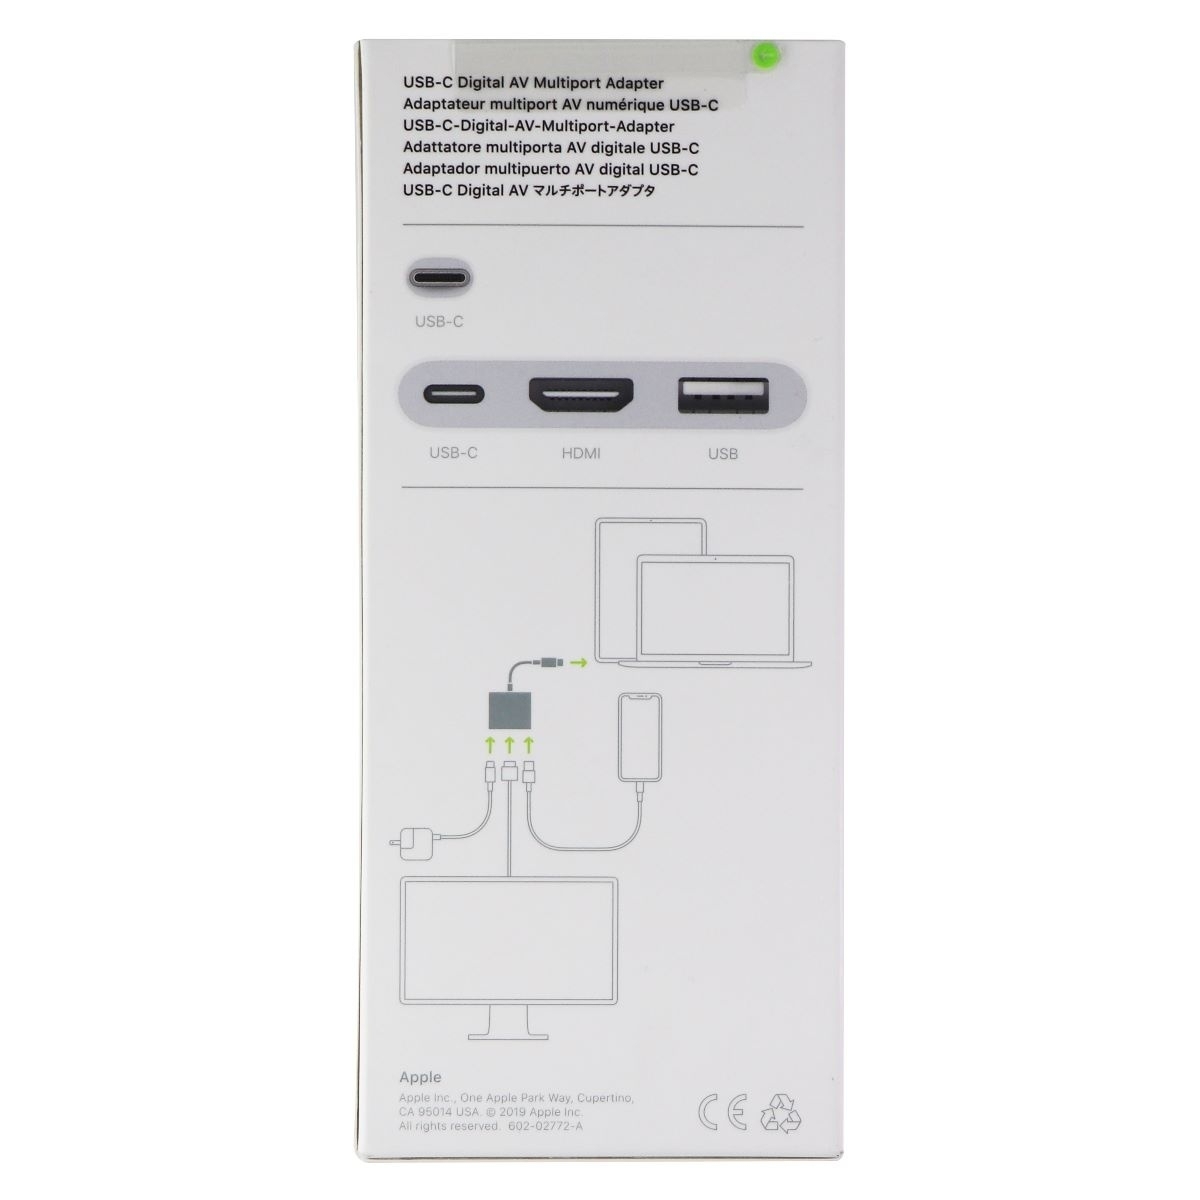 Apple USB-C Digital AV Multiport Adapter - image 2 of 3